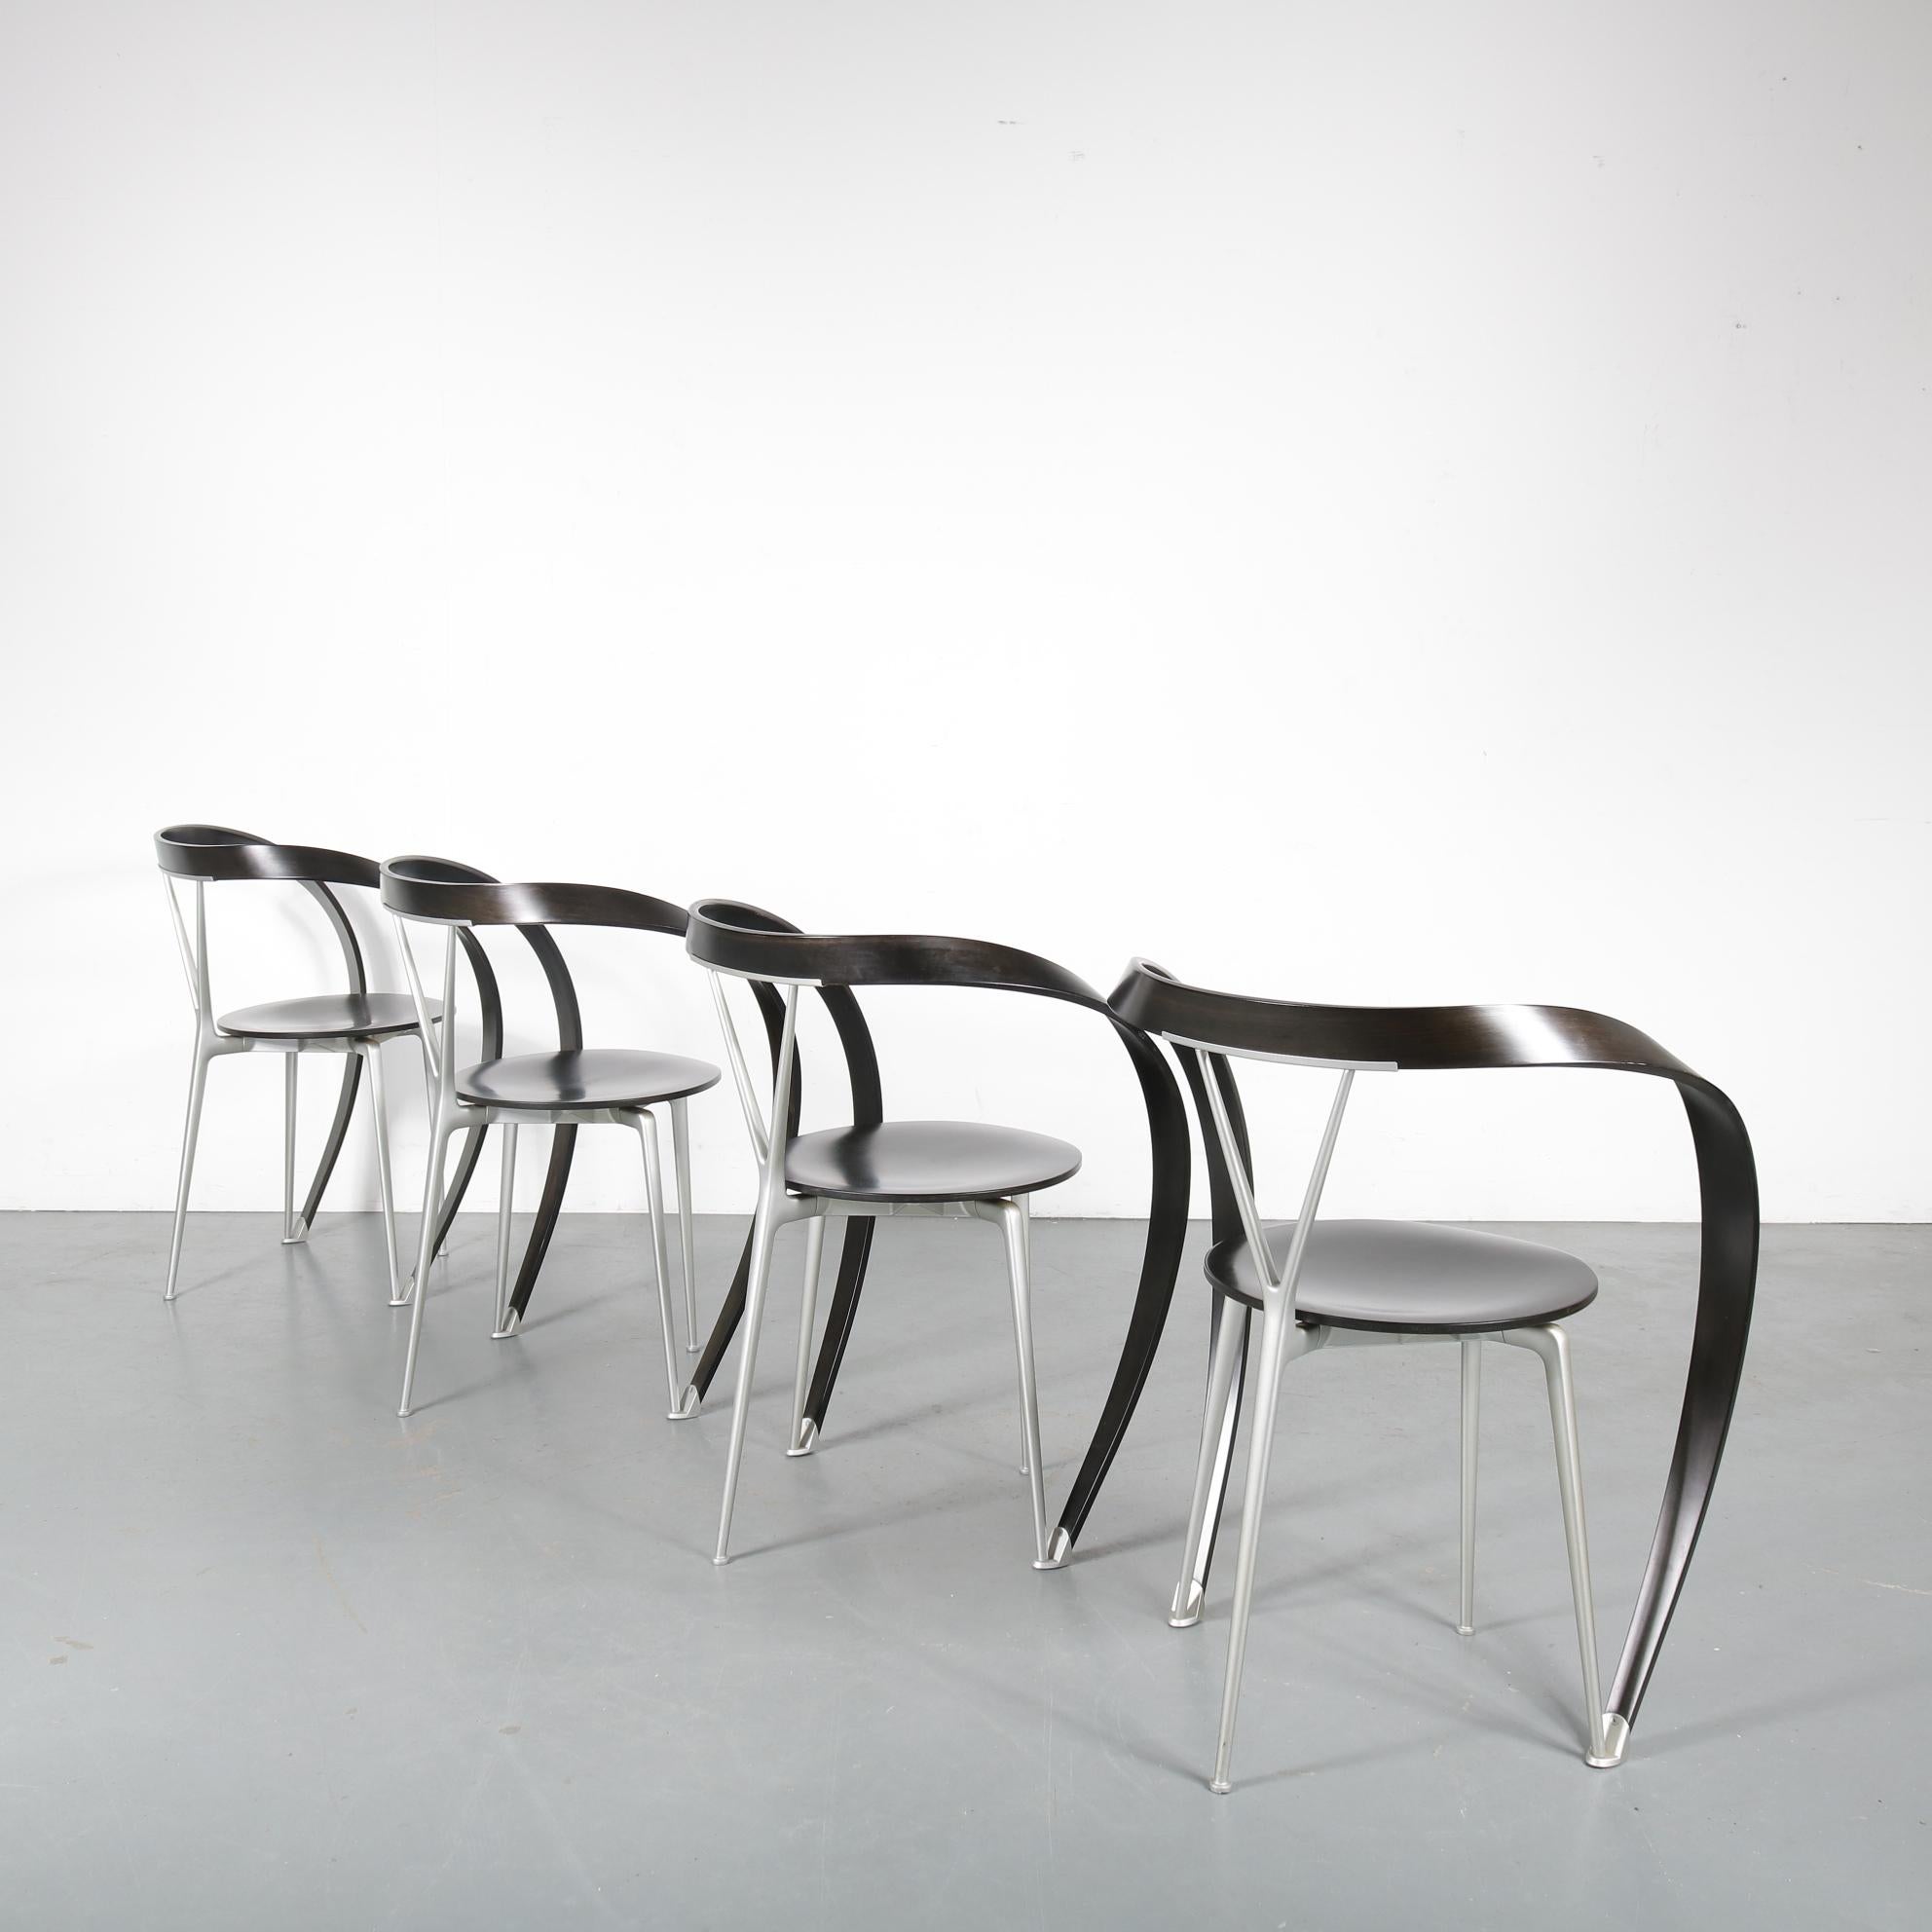 Italian Set of 4 Andrea Branzi “Revers” Chairs for Cassina, Italy, 1990